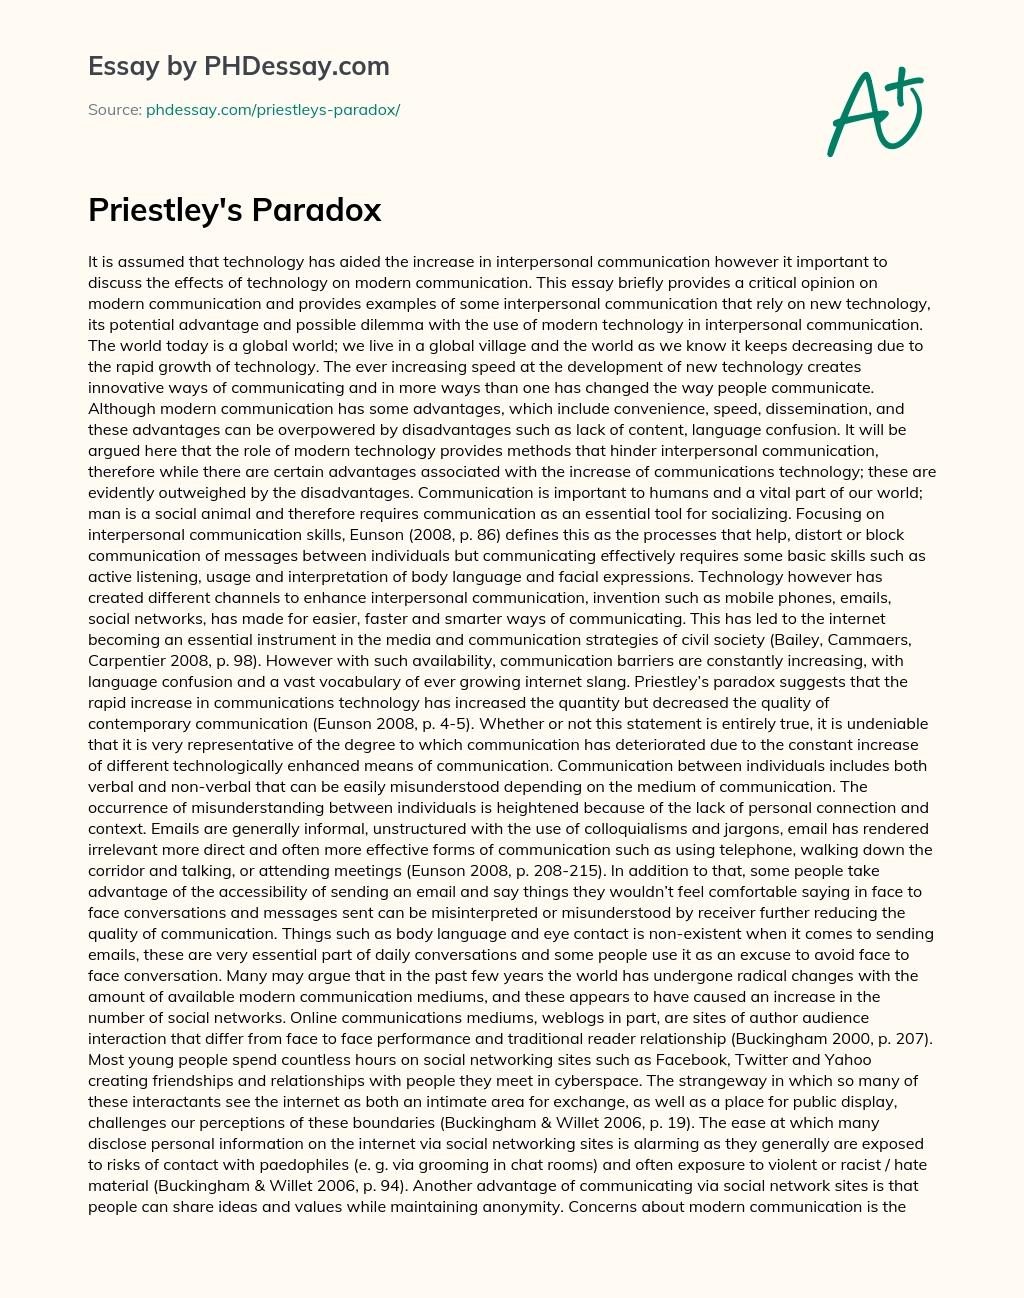 Priestley’s Paradox essay